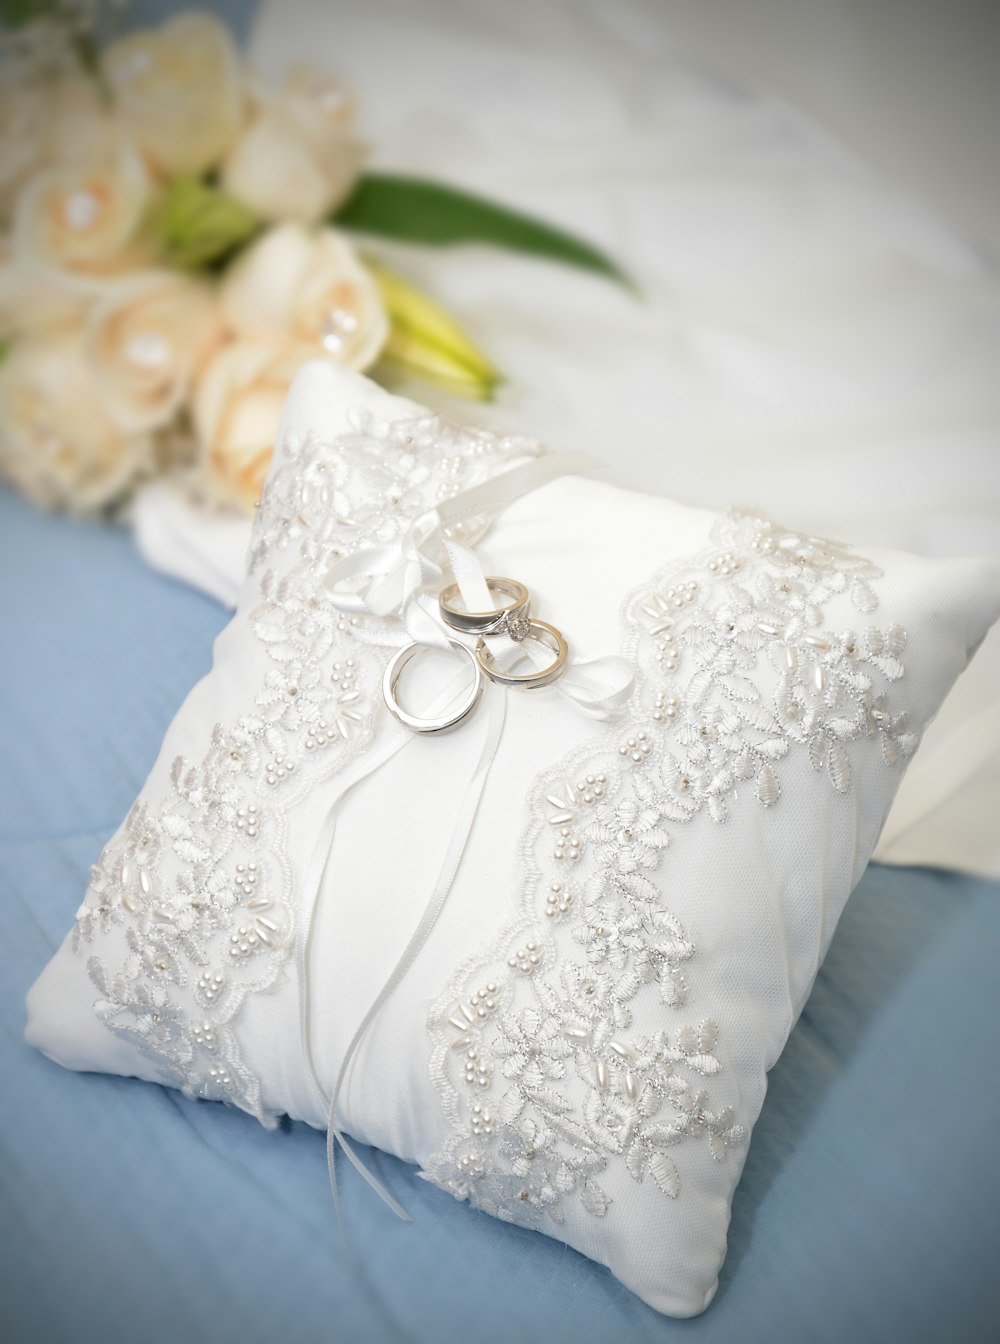 white floral dress on white textile